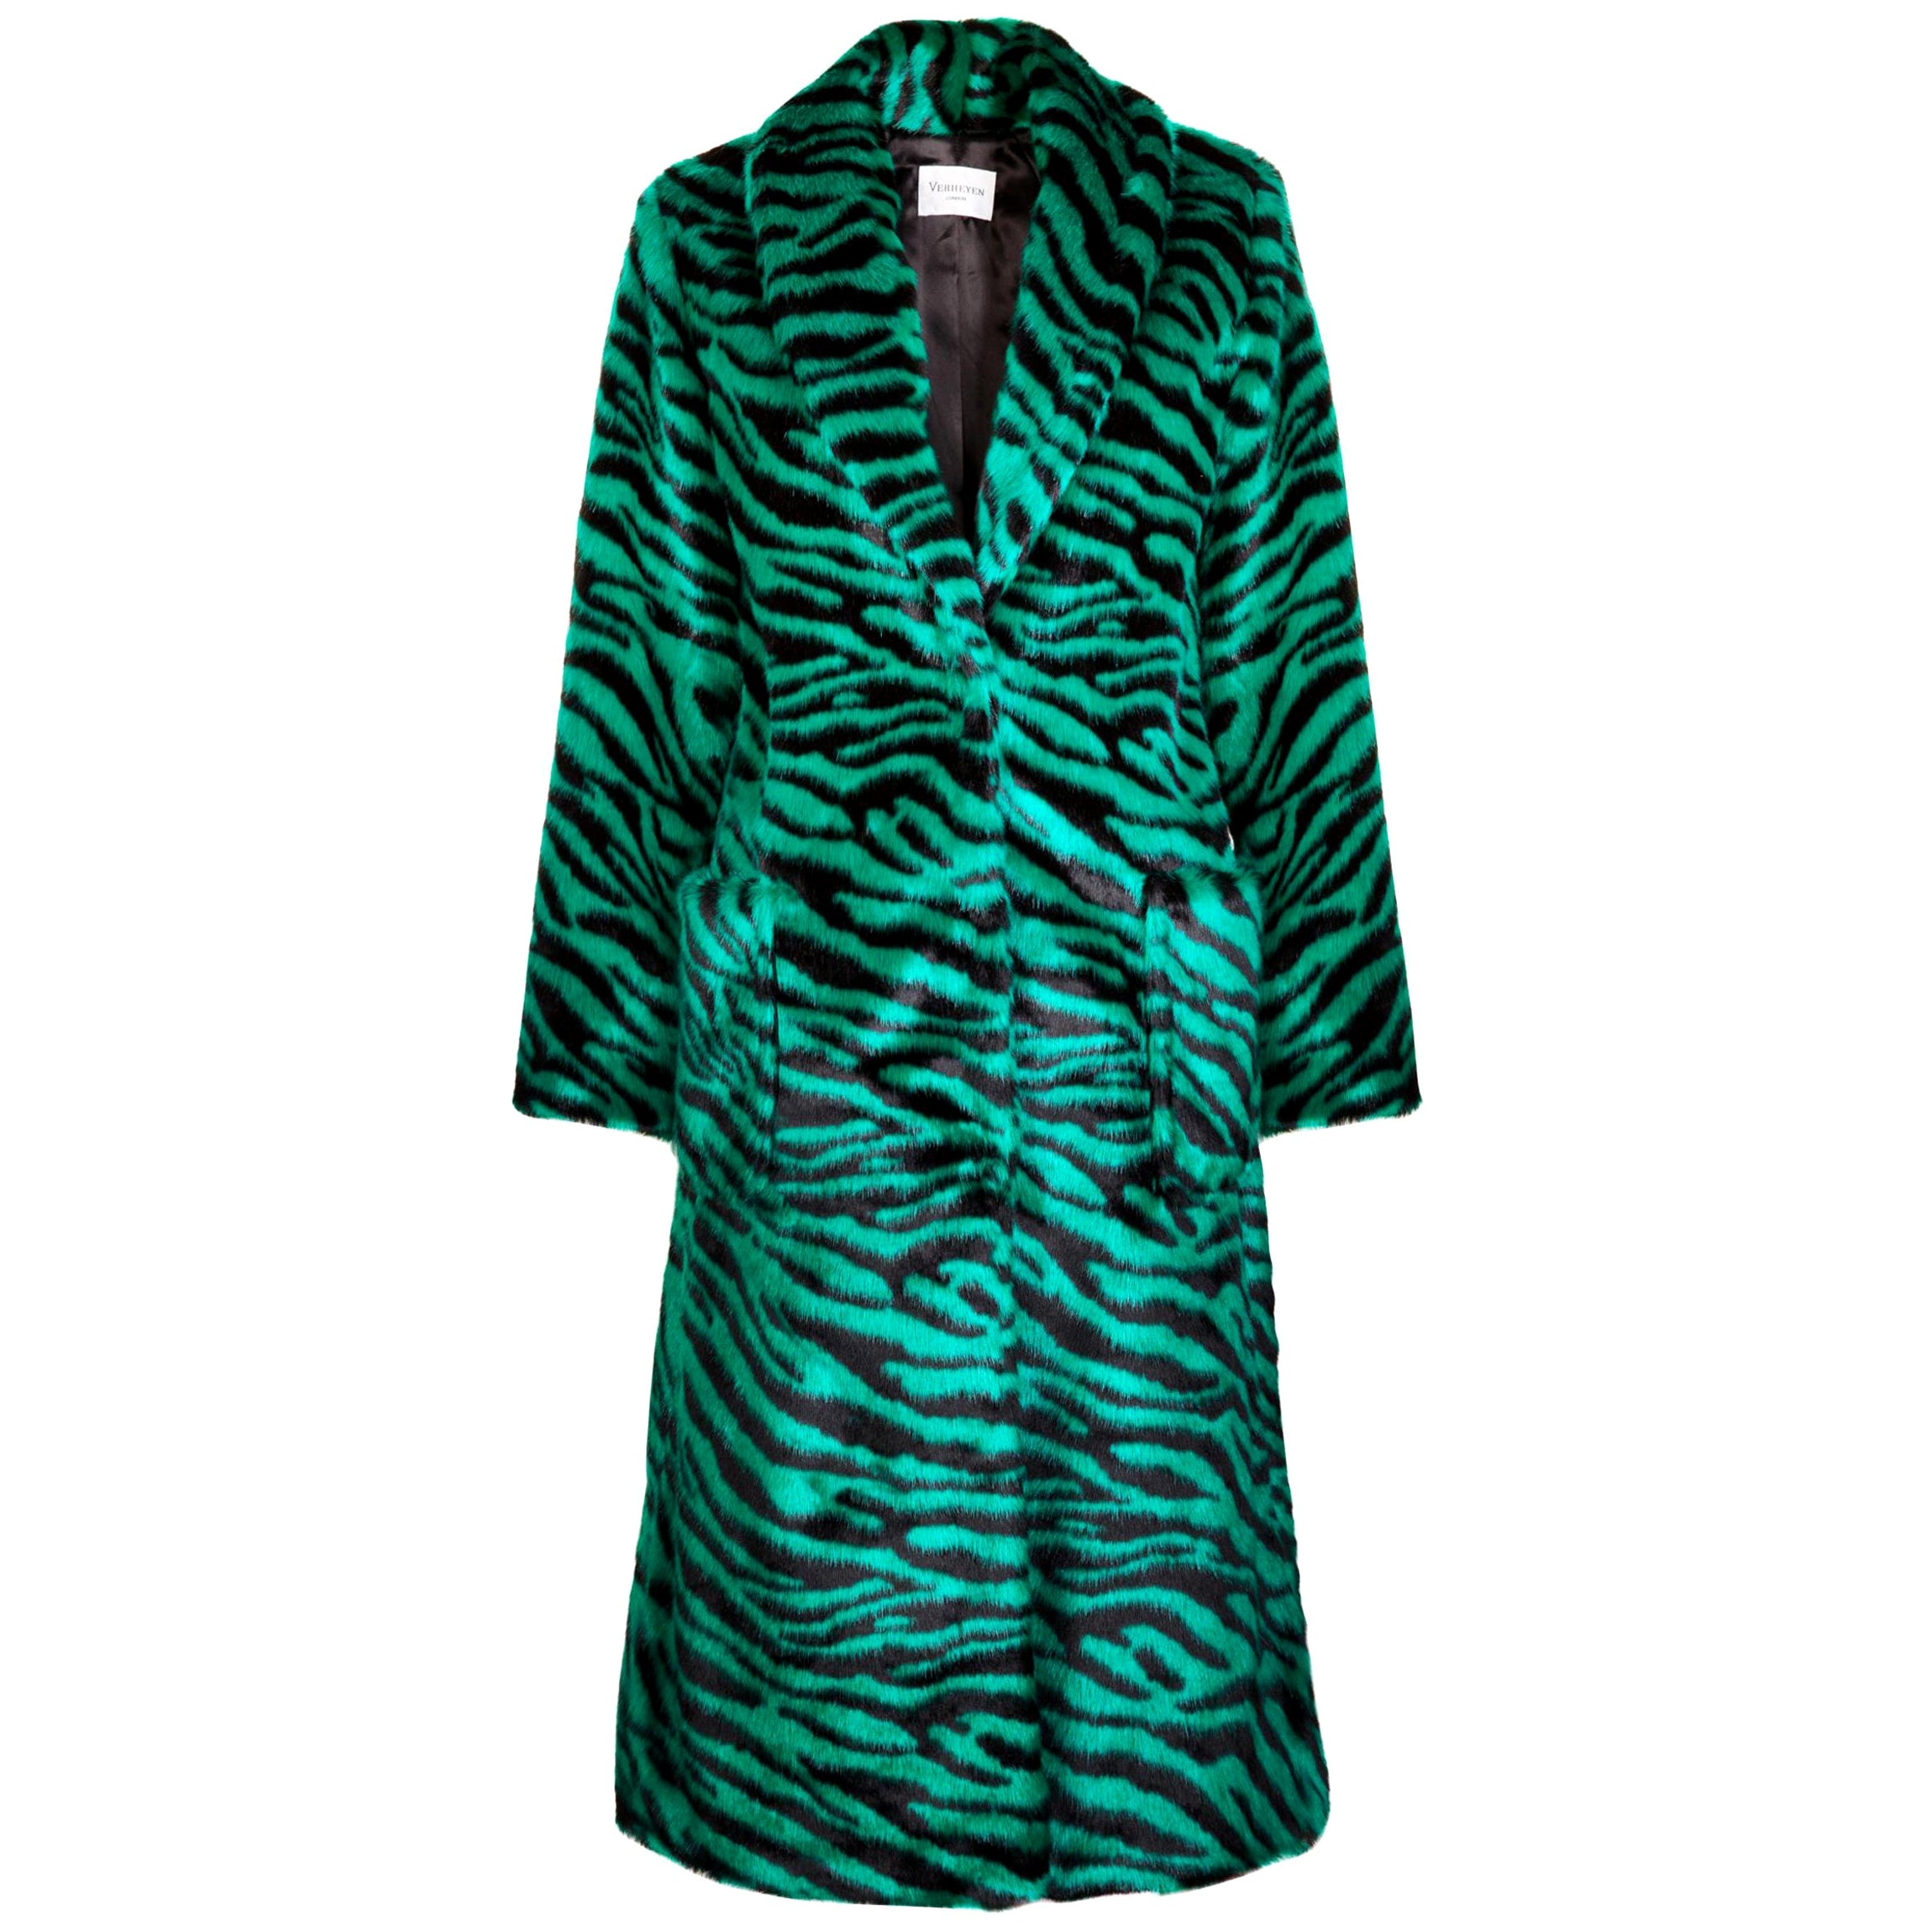 Verheyen London Esmeralda Faux Fur Coat in Emerald Green Zebra Print size uk 14 For Sale